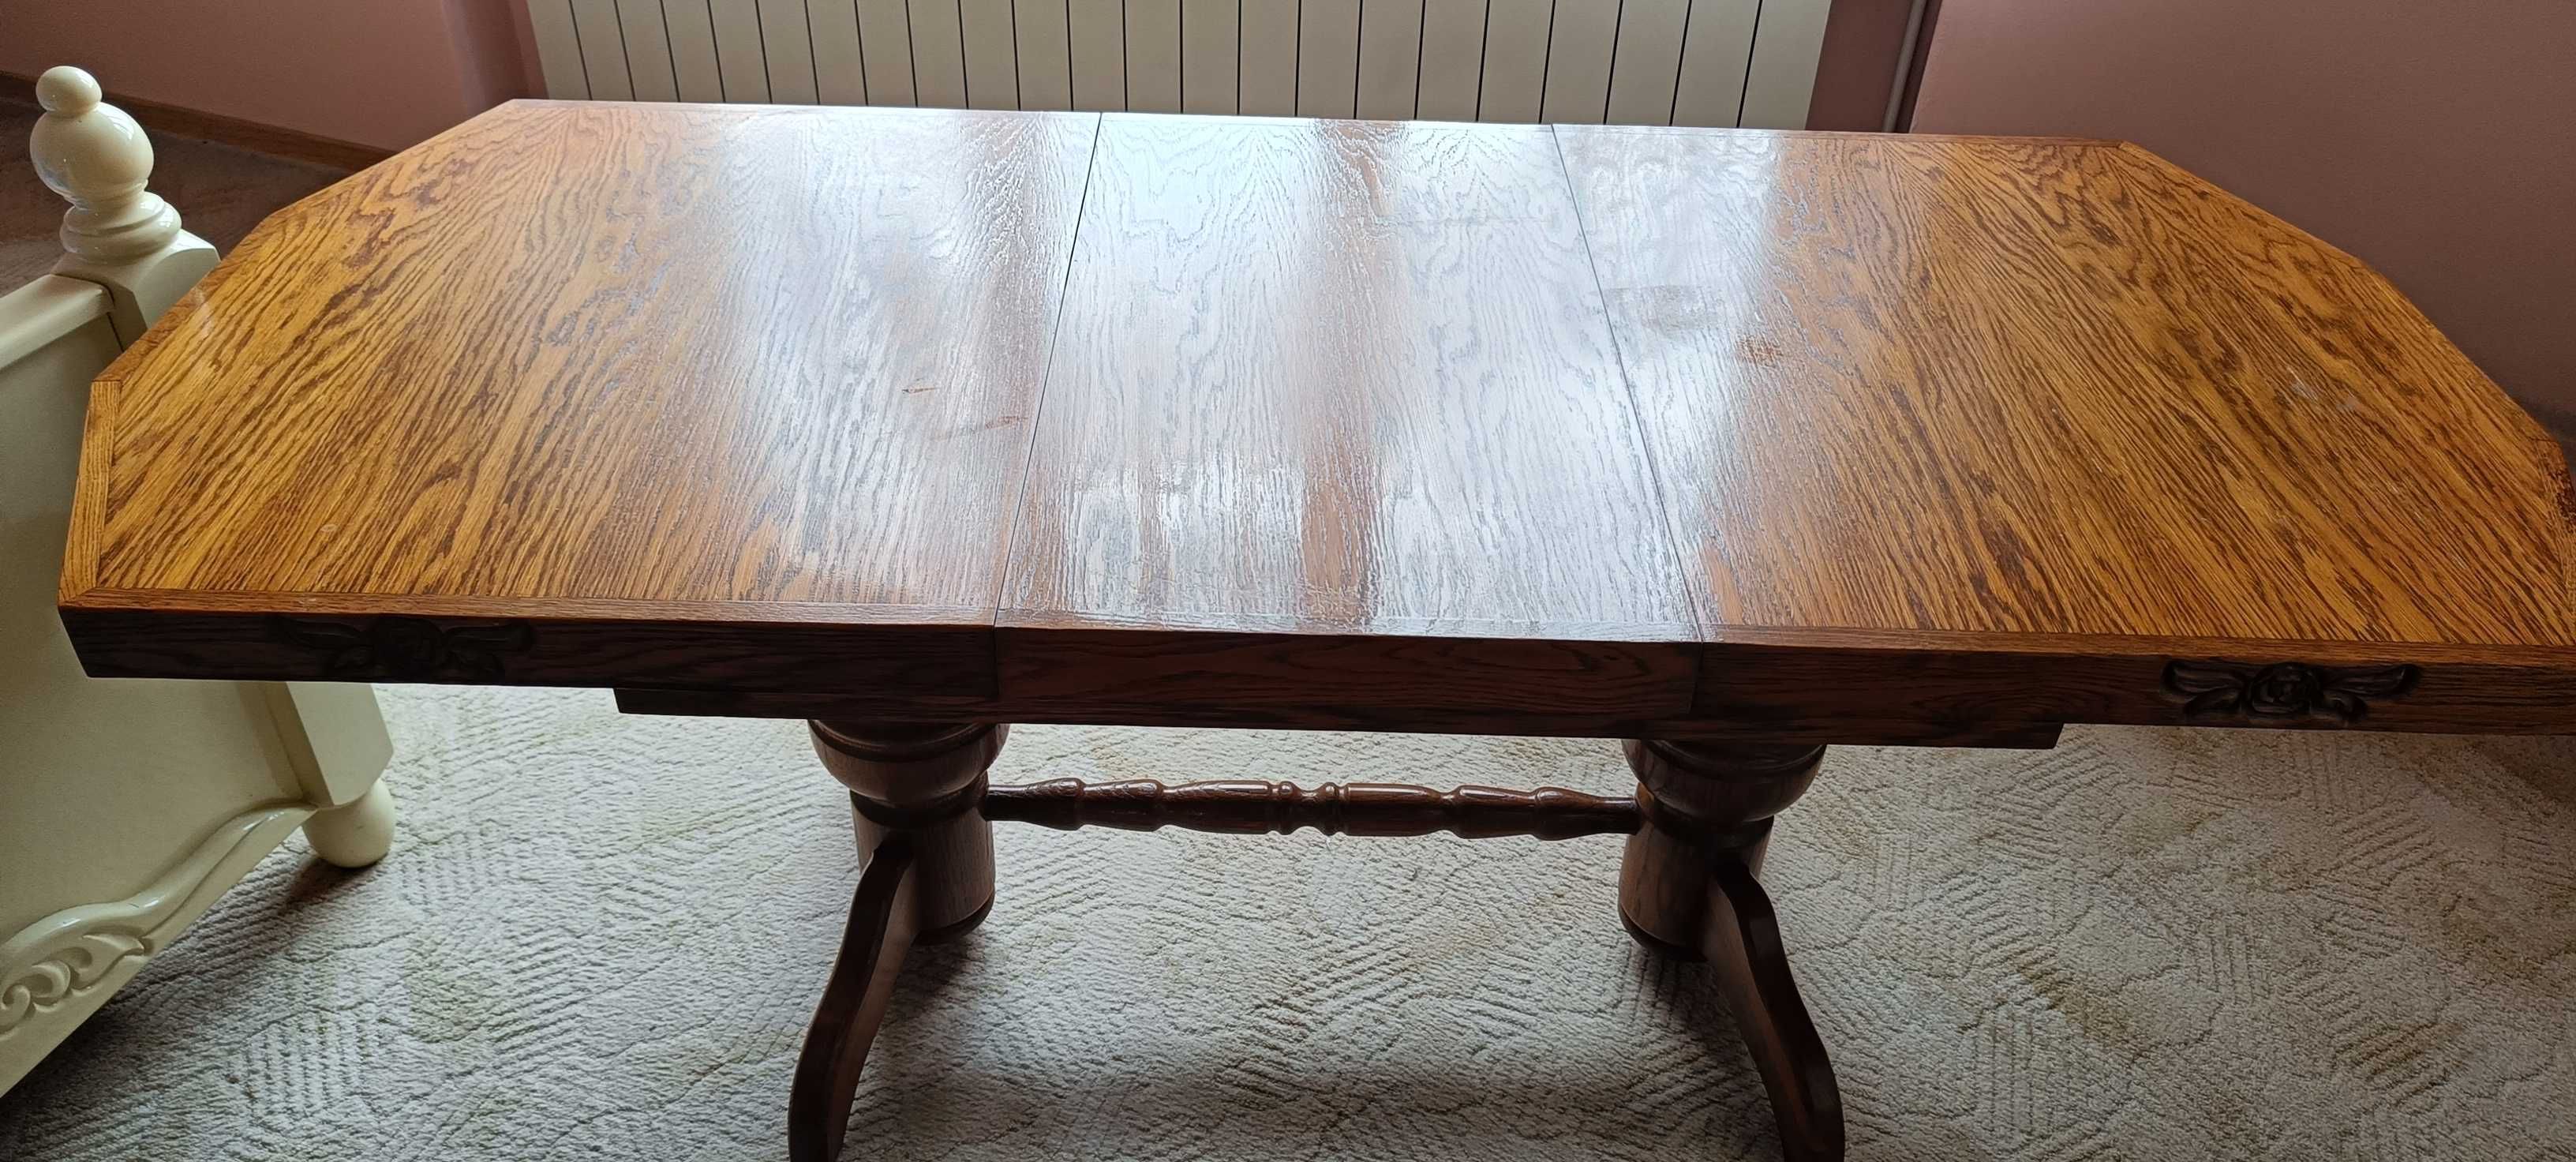 Komplet mebli: stół, ława i krzesła dębowe